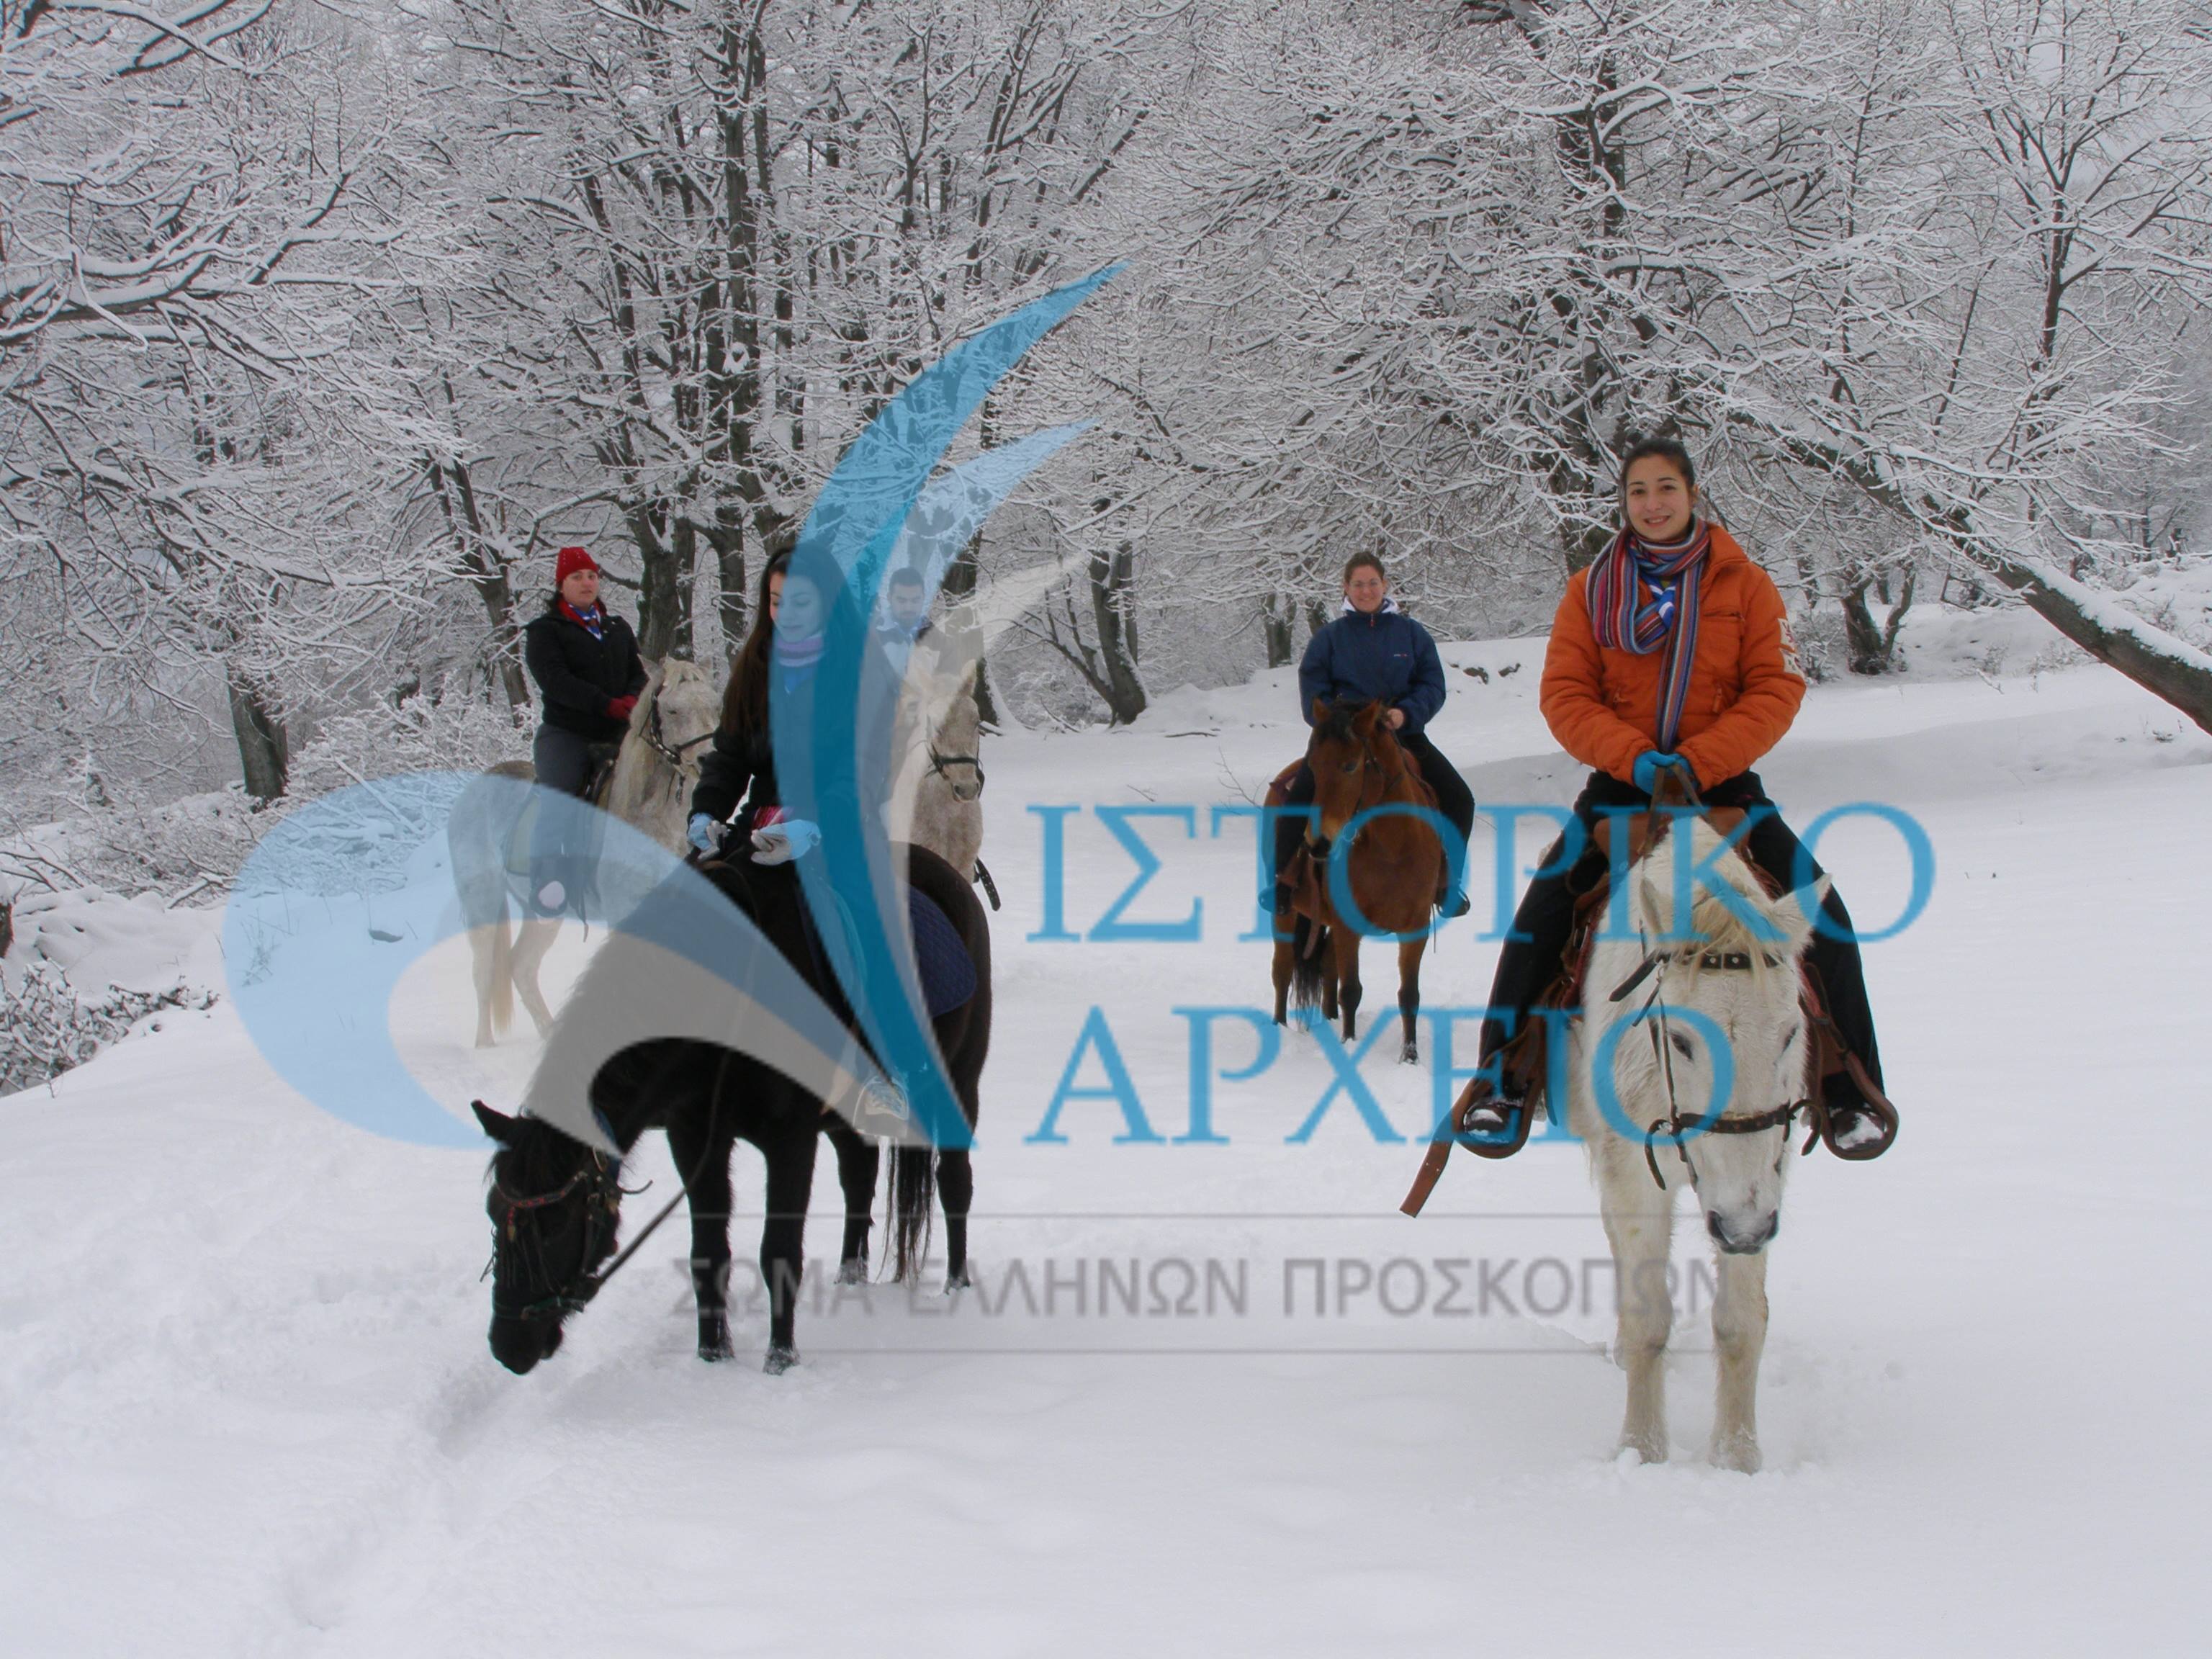 Κοινότητα ανιχνευτών από την Βέροια σε δράση ιππασίας στο χιονισμένο Σκλήθρο Φλώρινας το 2009.